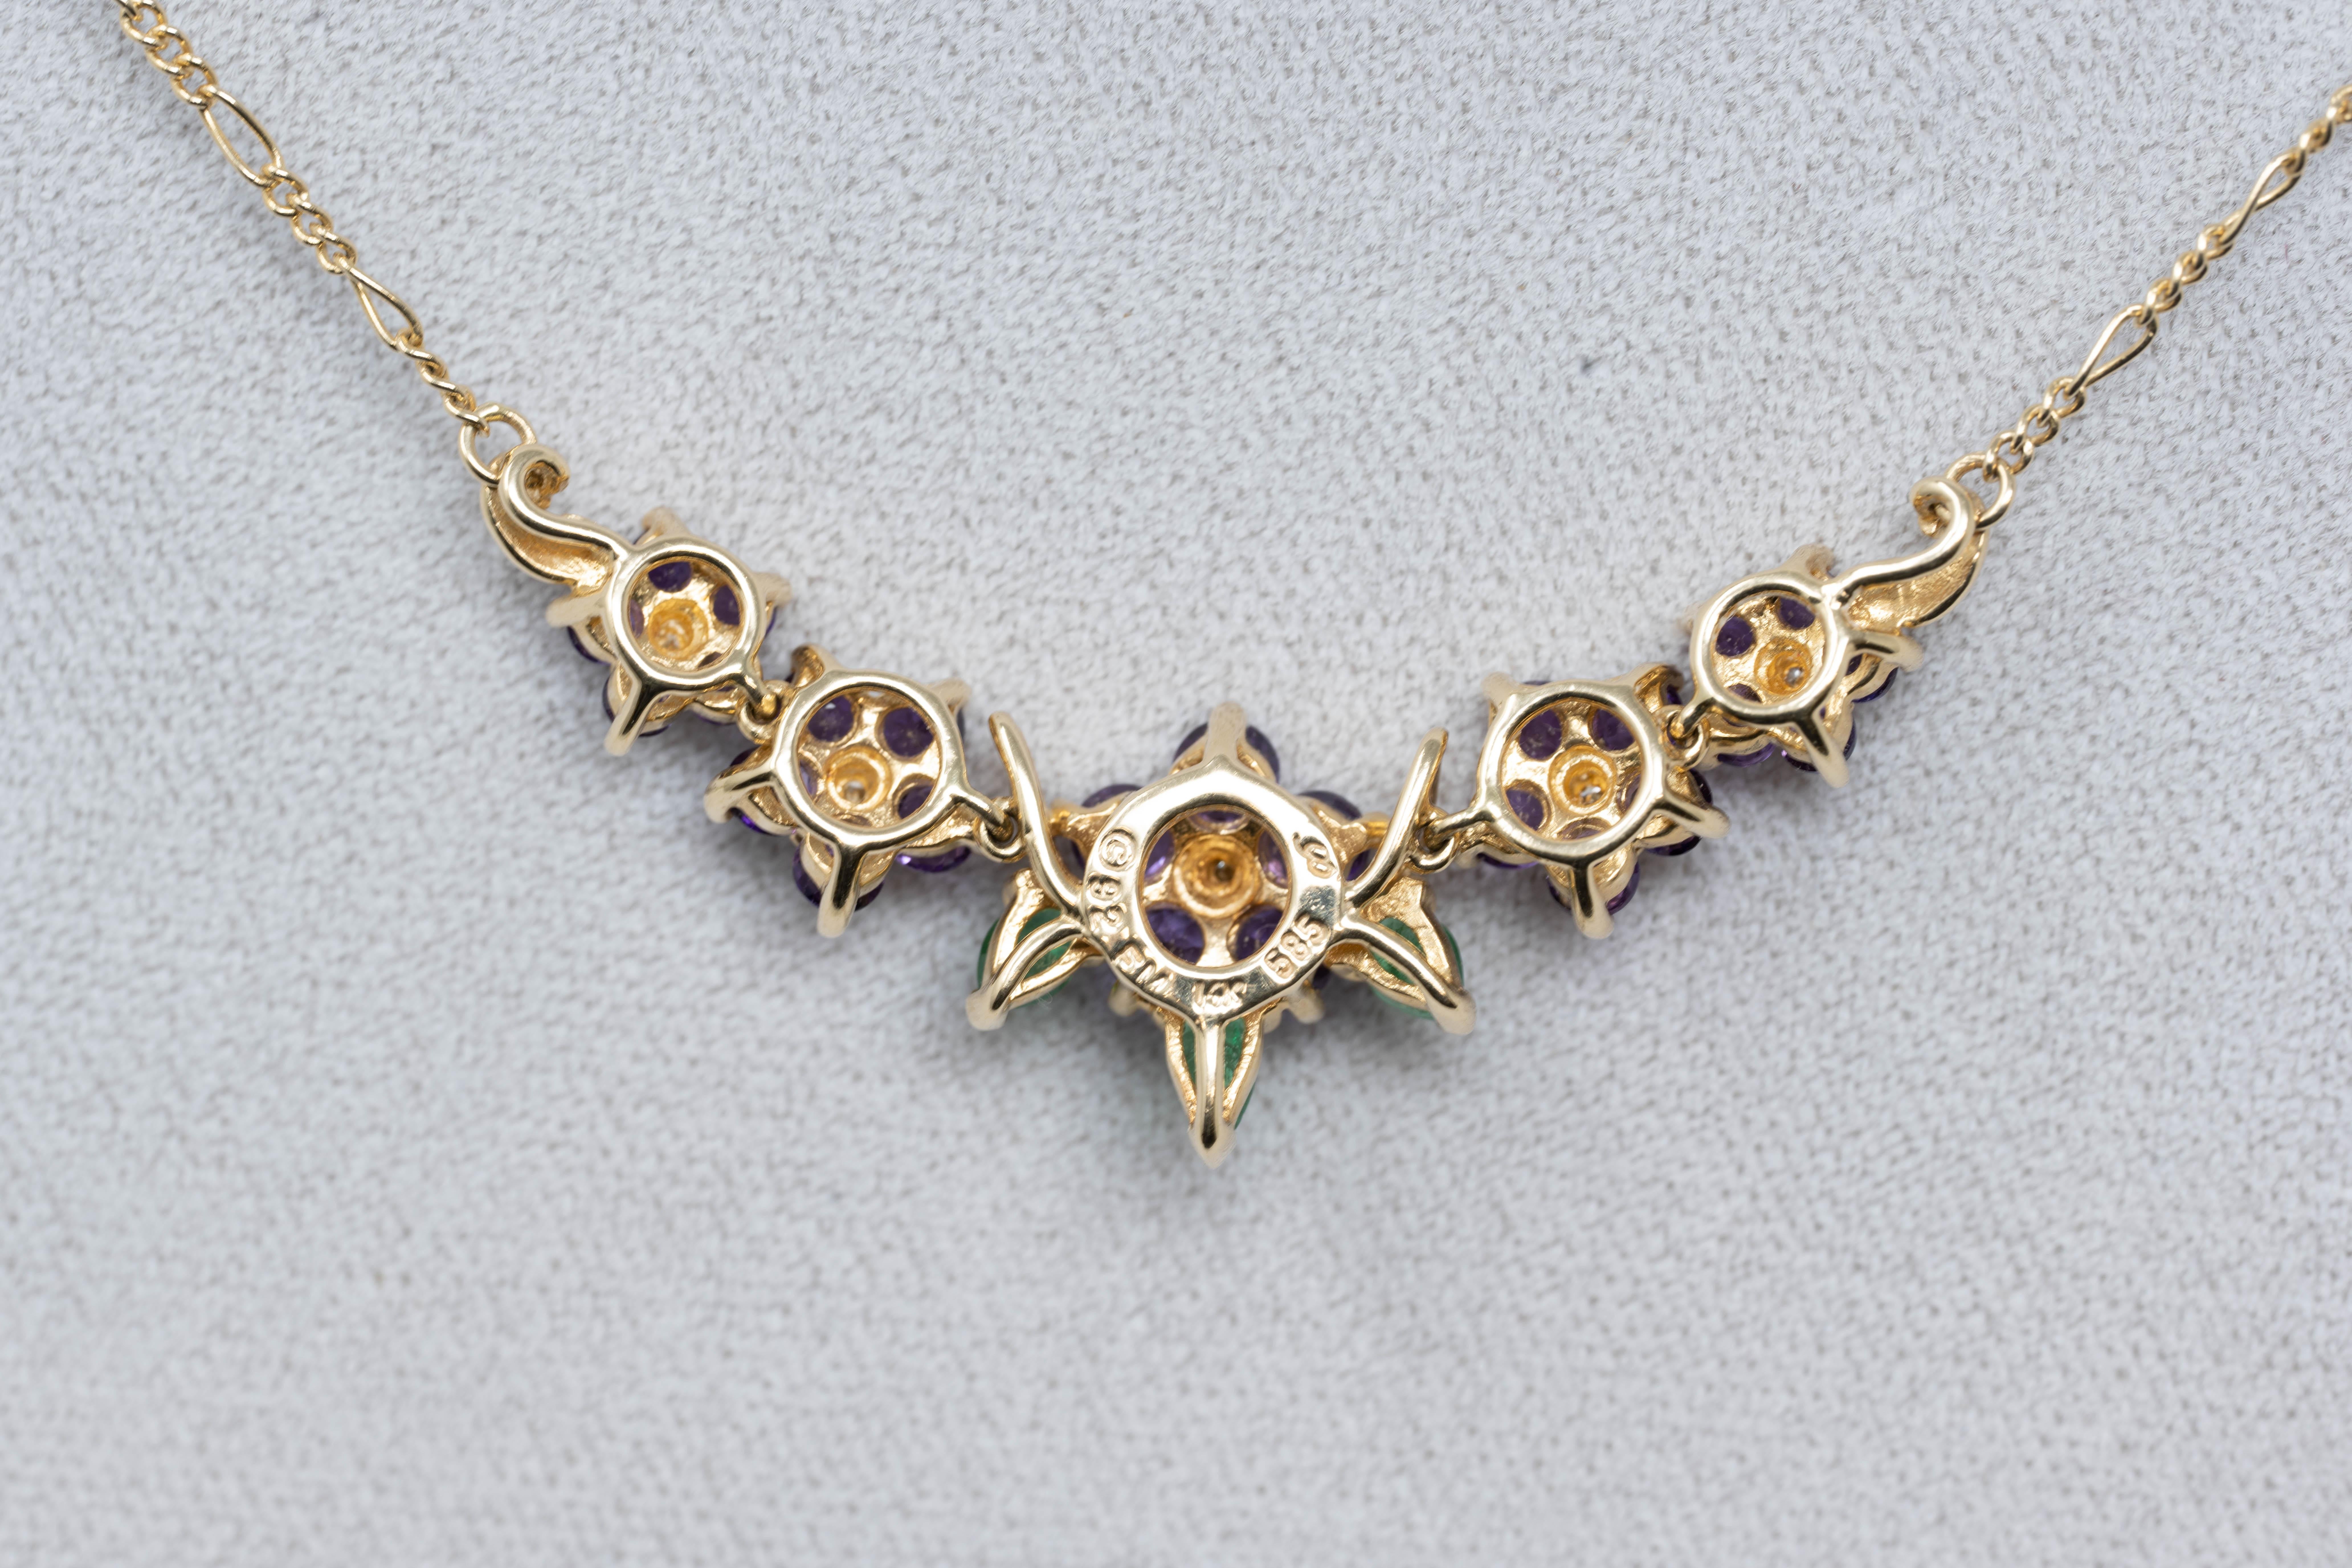 Maison d'Igor Carl Faberge pour Franklin Mint Collier et paire de boucles d'oreilles en or 14k, collier. Le collier est serti de 5 diamants, de 3 émeraudes en forme de poire et de 25 améthystes. Les boucles d'oreilles sont serties de 1 diamant, 2